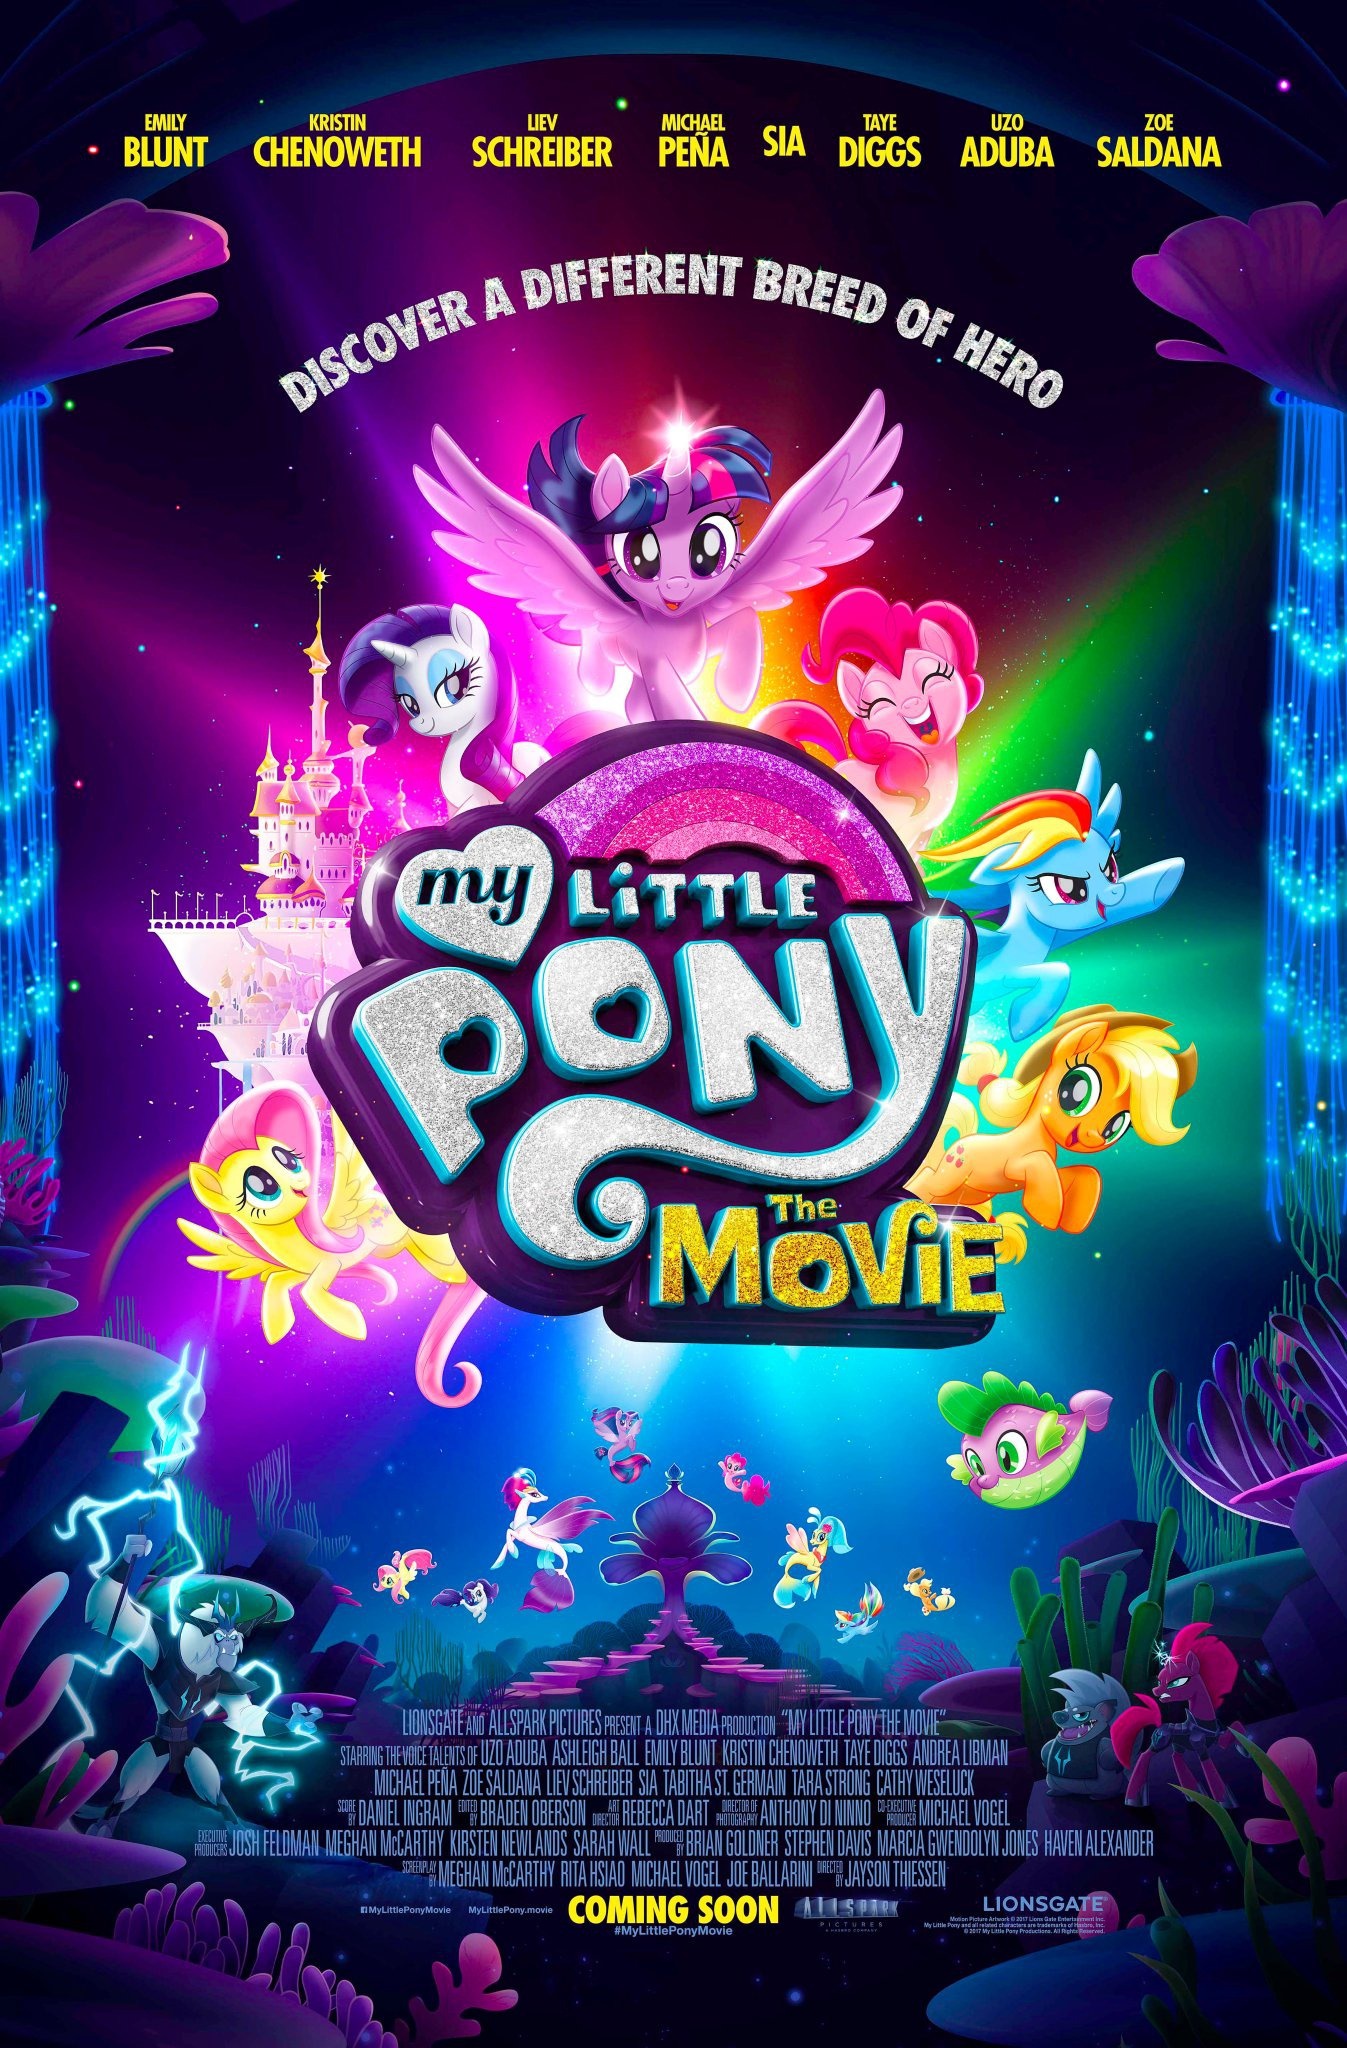 فلم الكرتون مهرتي الصغيرة ماي ليتل بوني My Little Pony: The Movie 2017 مترجم للعربية